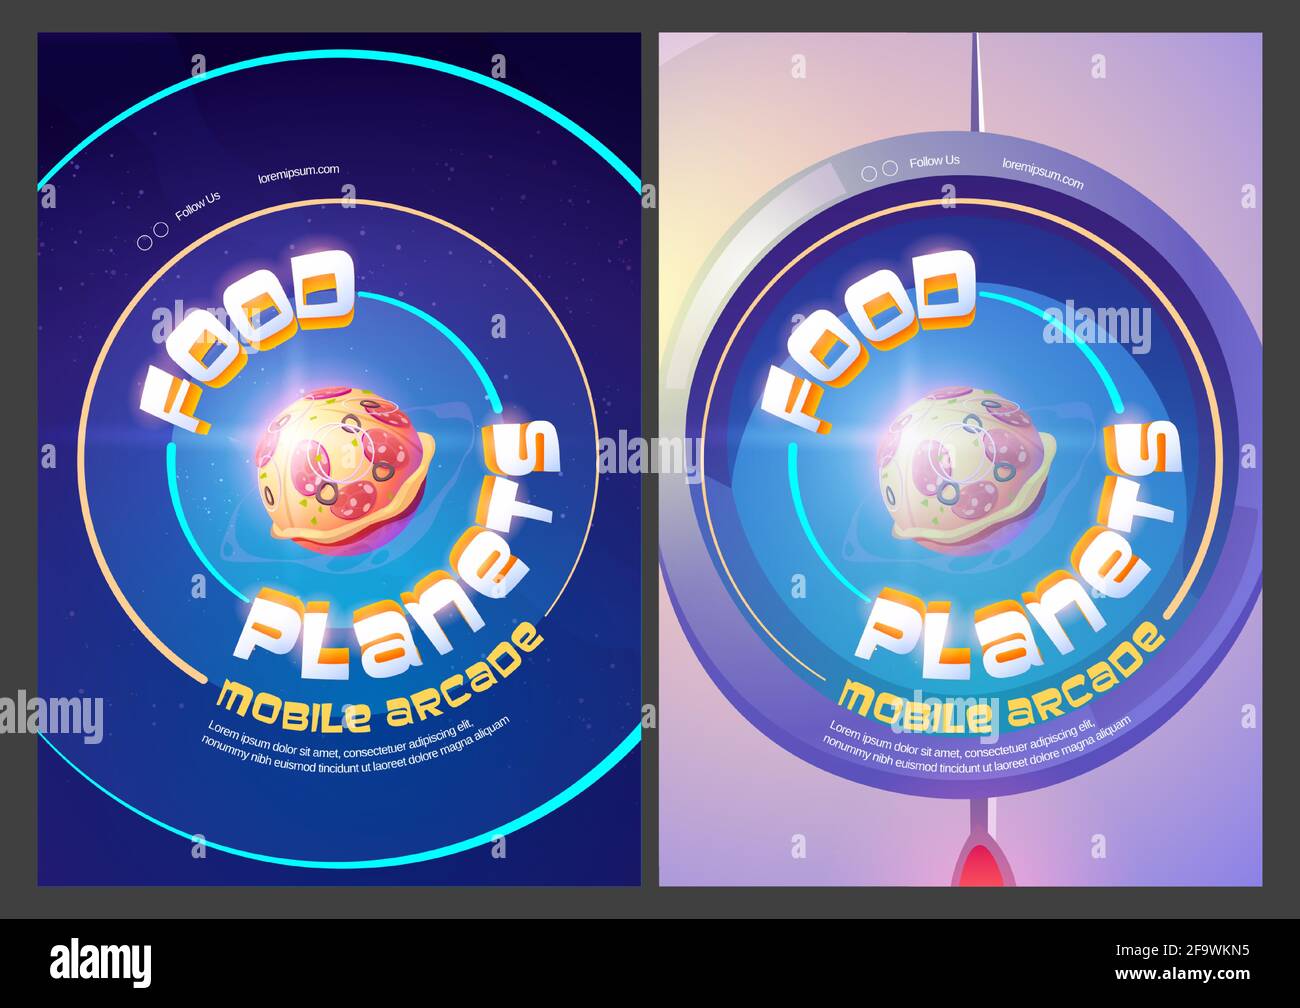 Food Planets mobile arcade, gioco di fantasia cosmica con sfera pizza nello spazio esterno vista oblò. Avventura nel cosmo, divertente disegno grafico dell'interfaccia utente galassia mondiale, schermi a bordo Cartoon Vector Illustration Illustrazione Vettoriale